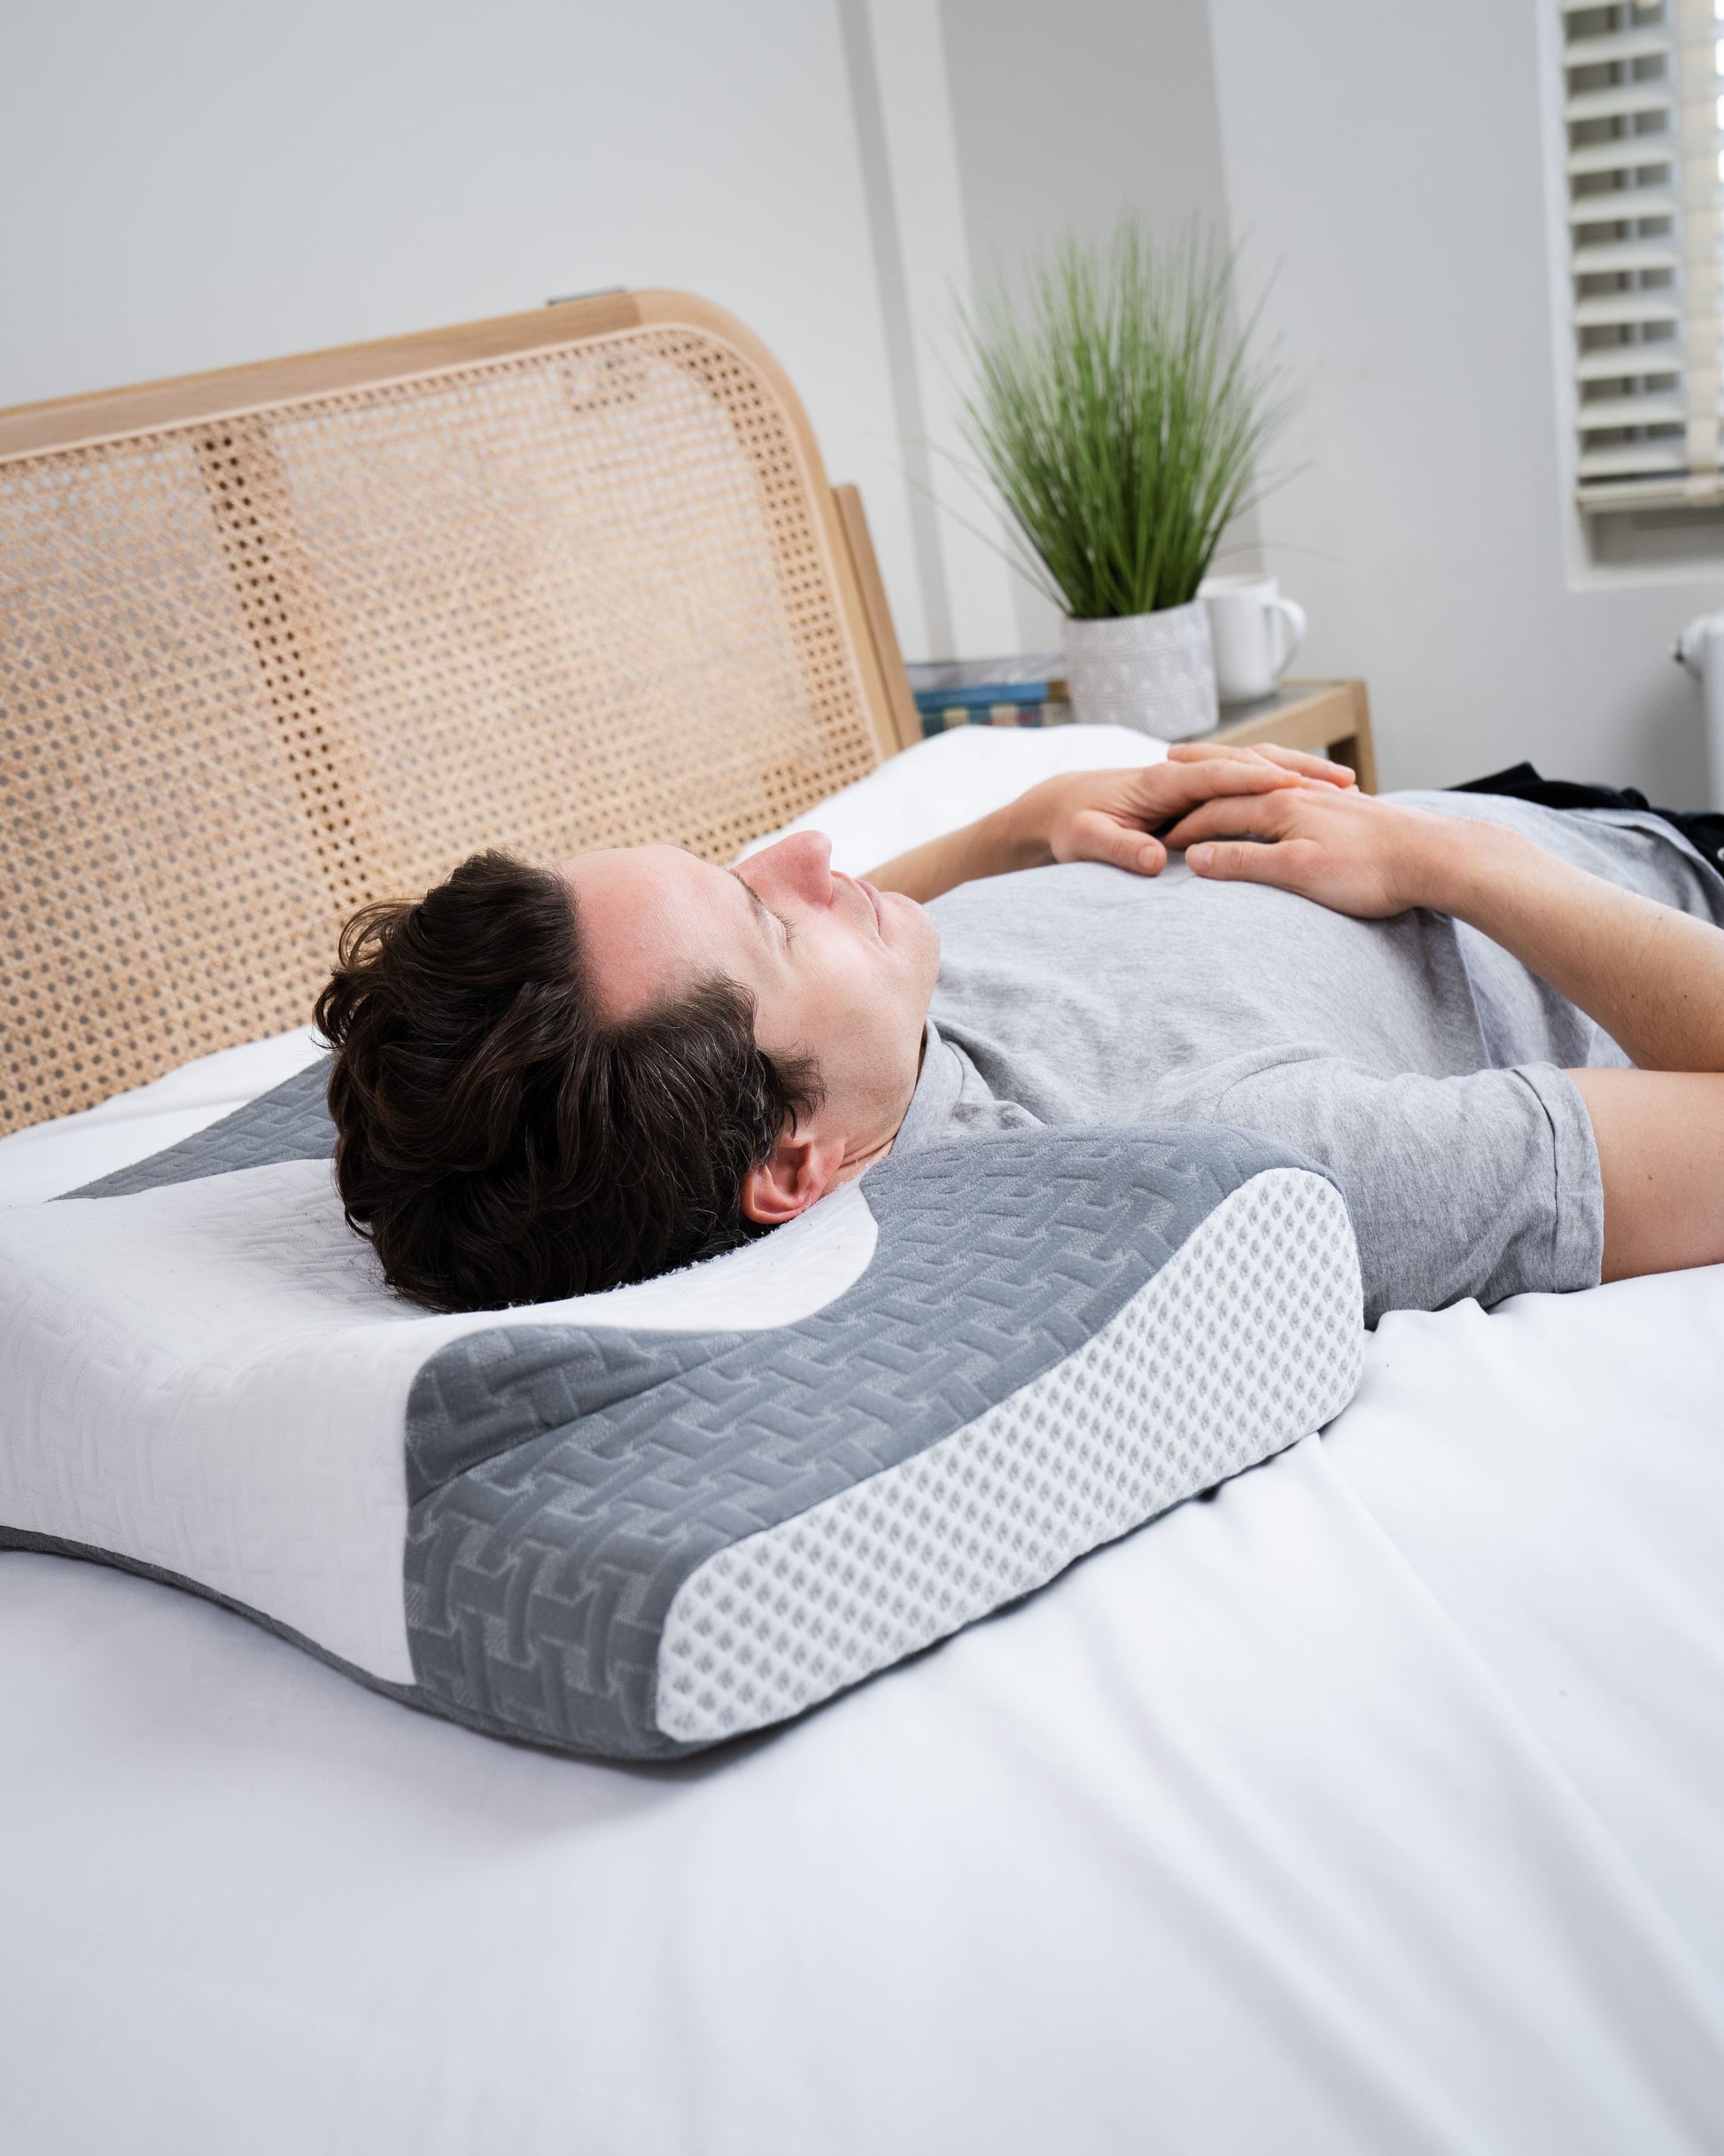 Cervical Pillow for Neck Pain Relief, Ergonomic Adjustable Contour